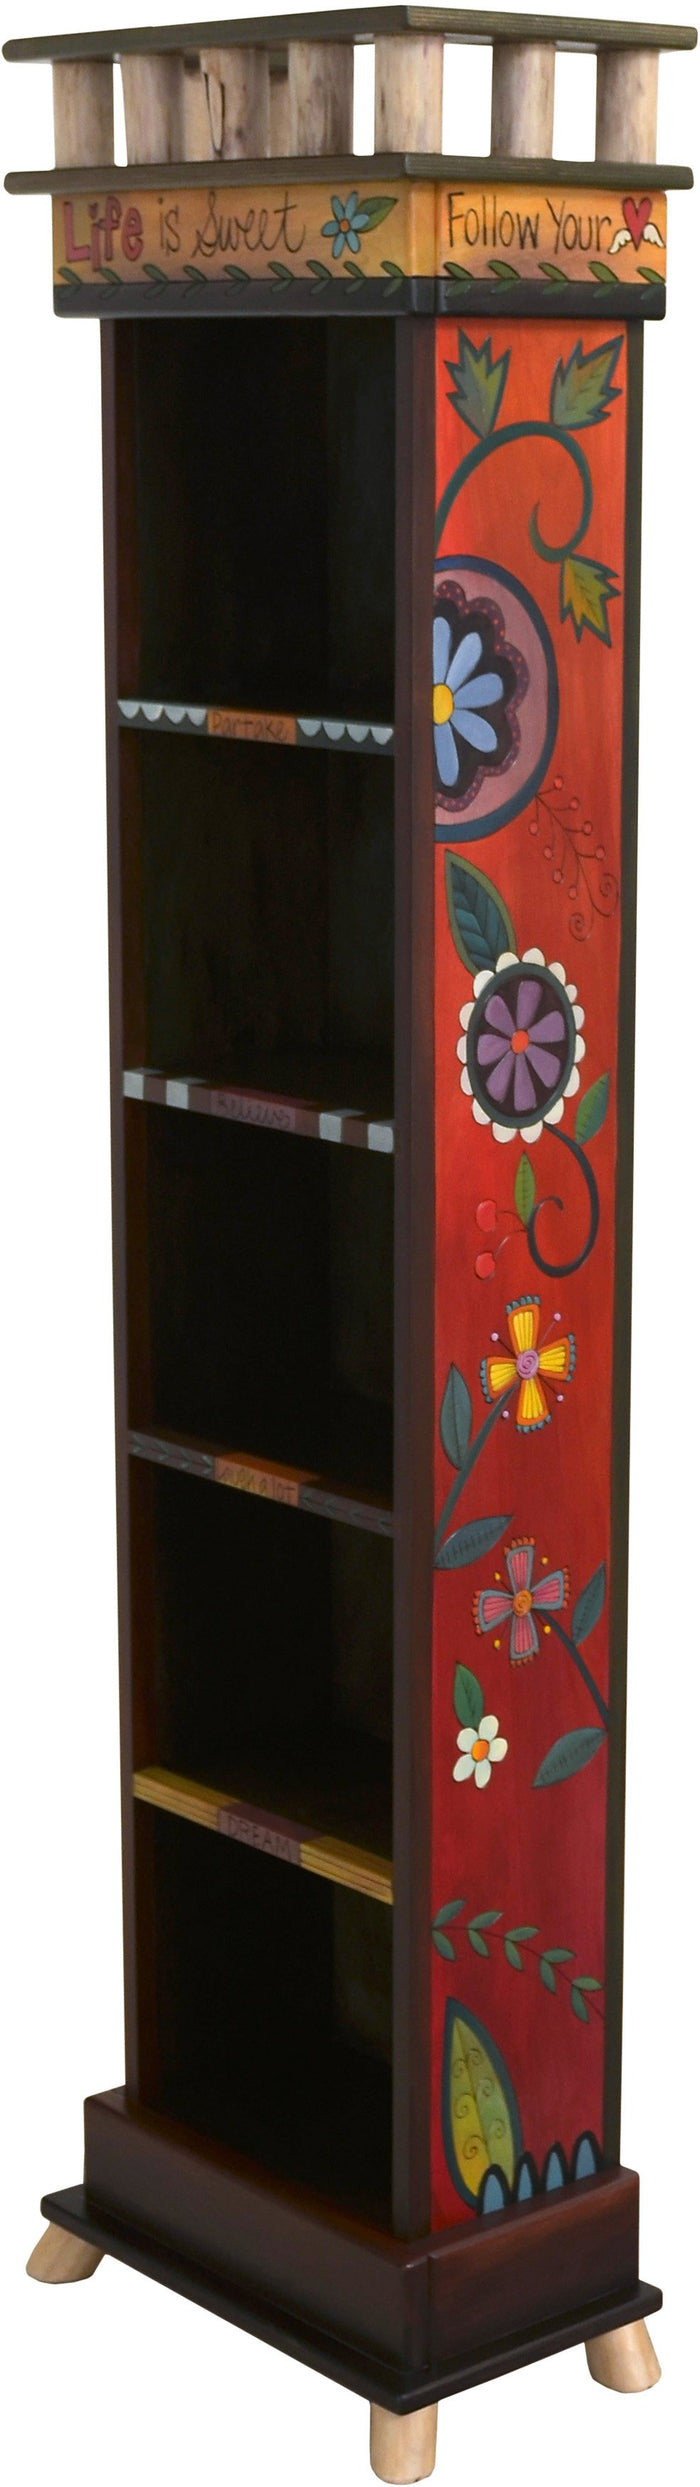 Narrow Bookcase